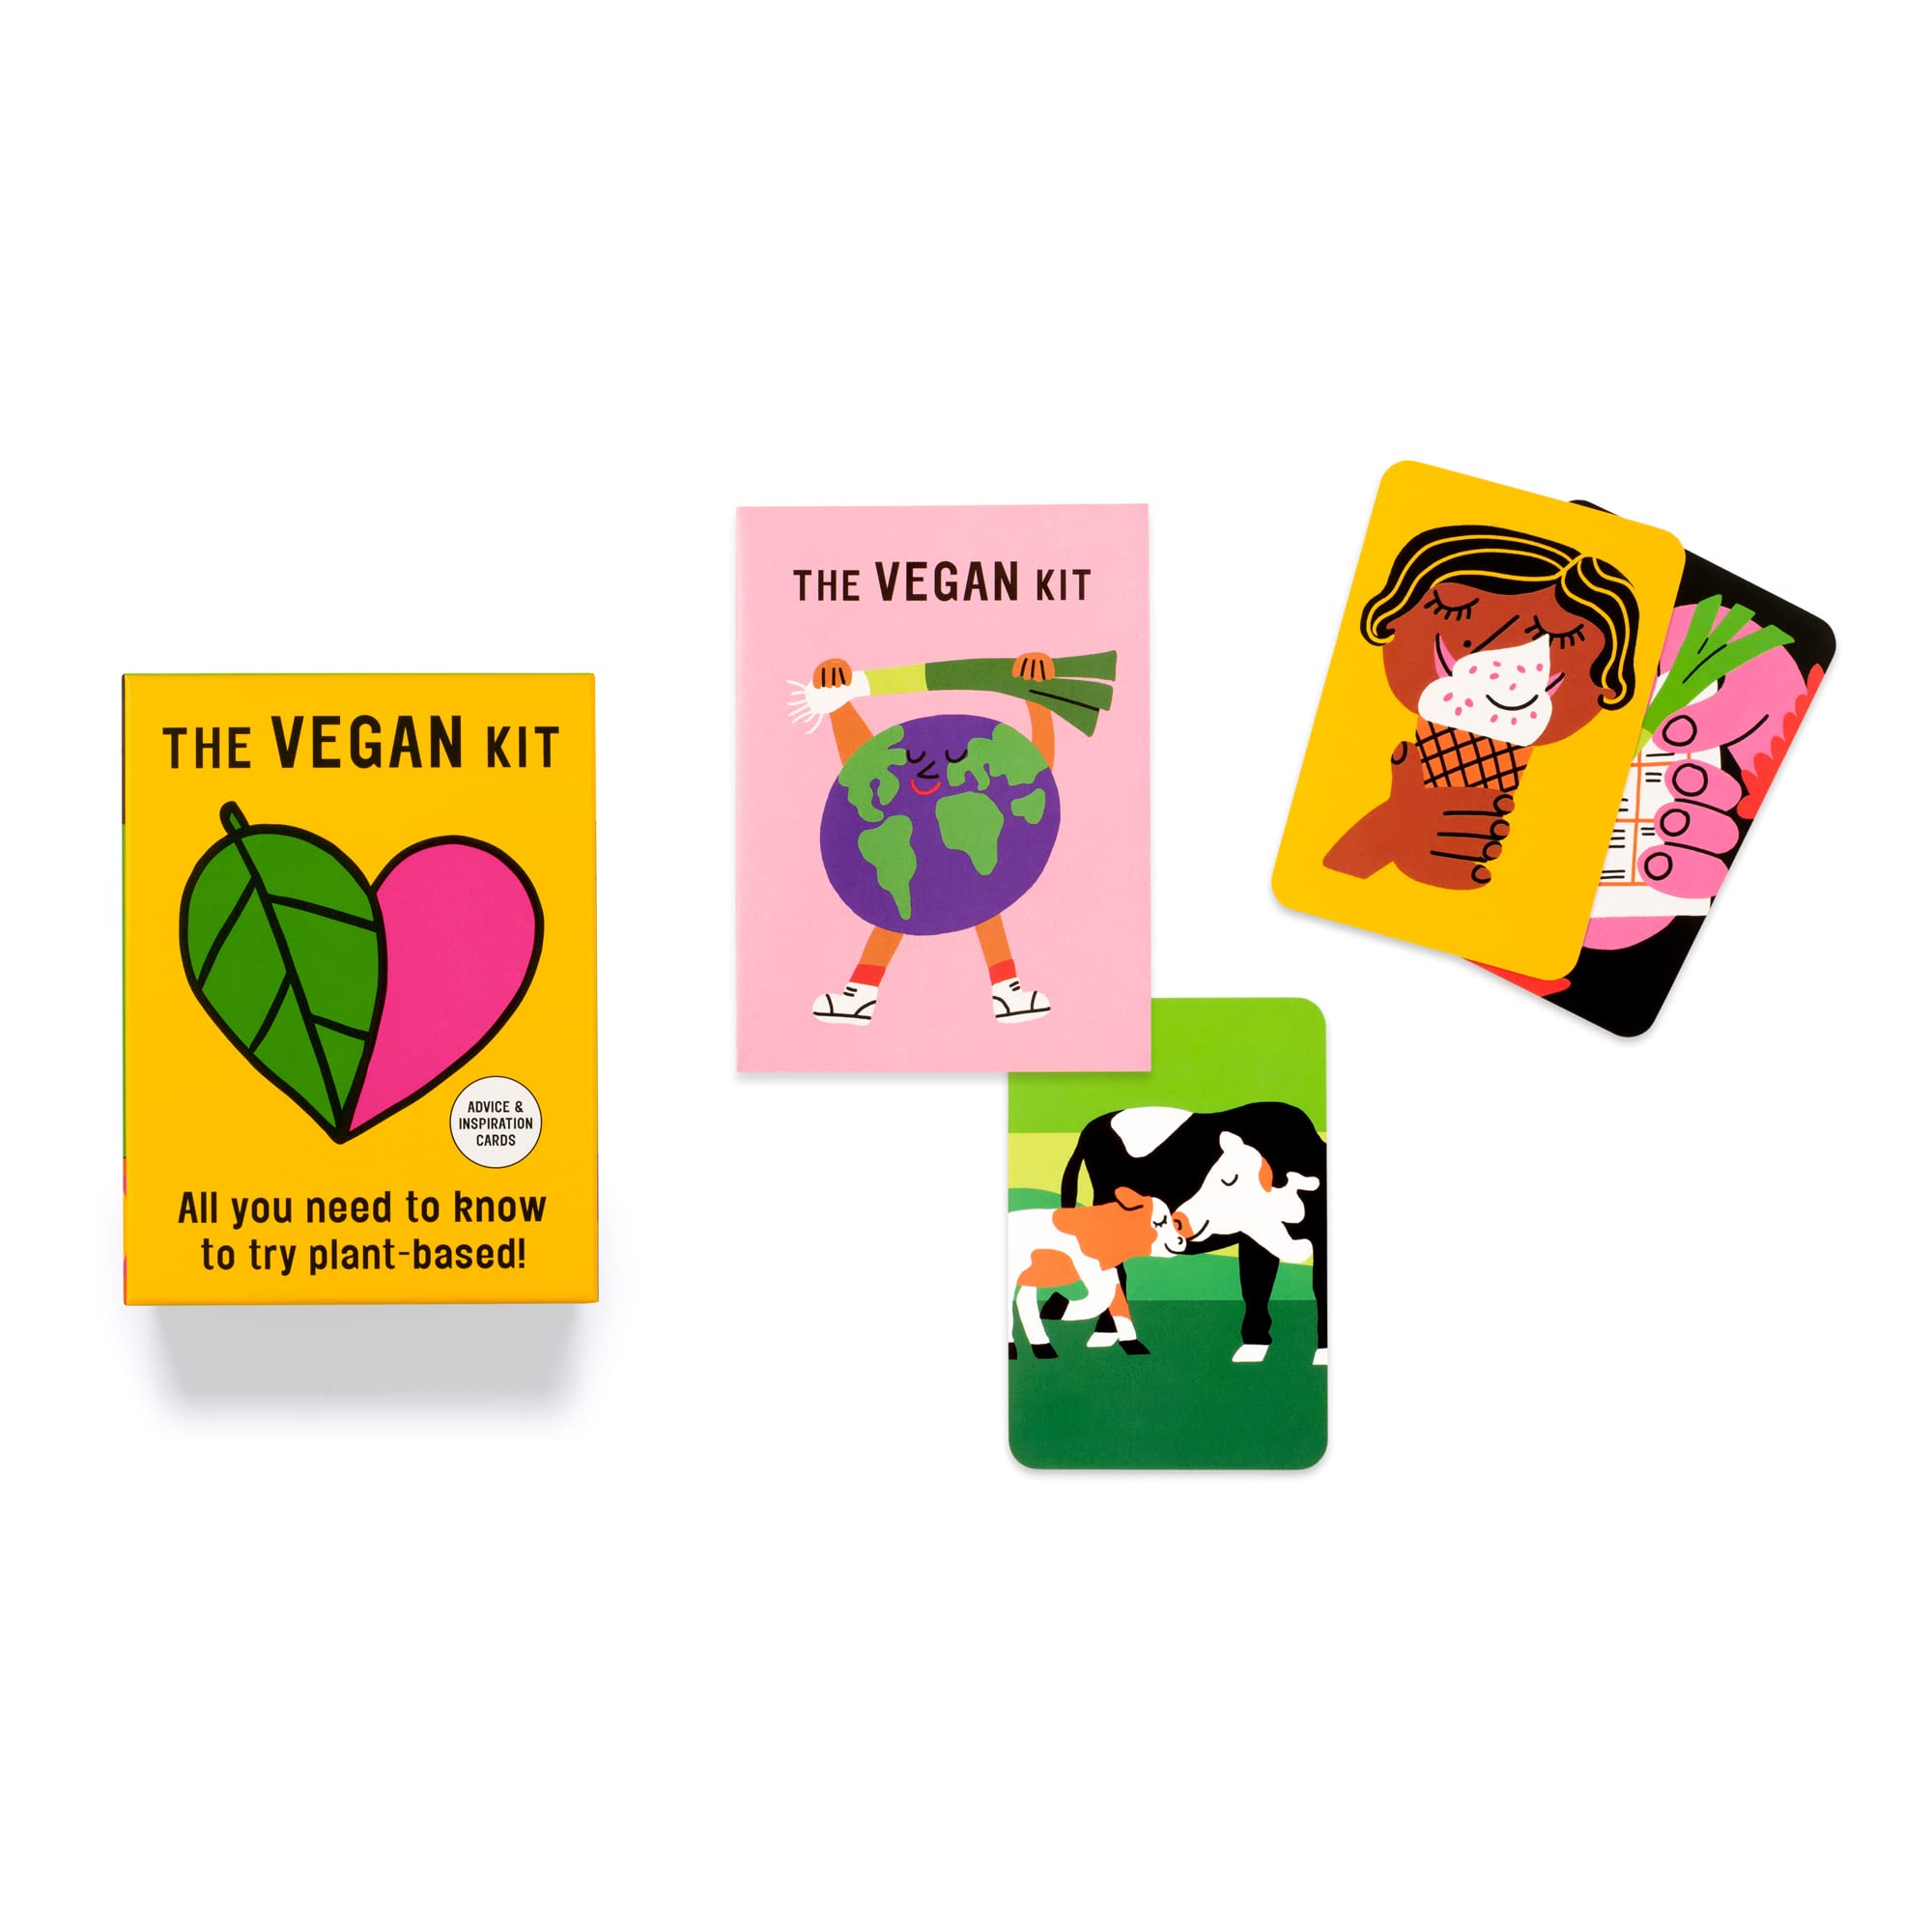 The Vegan Kit